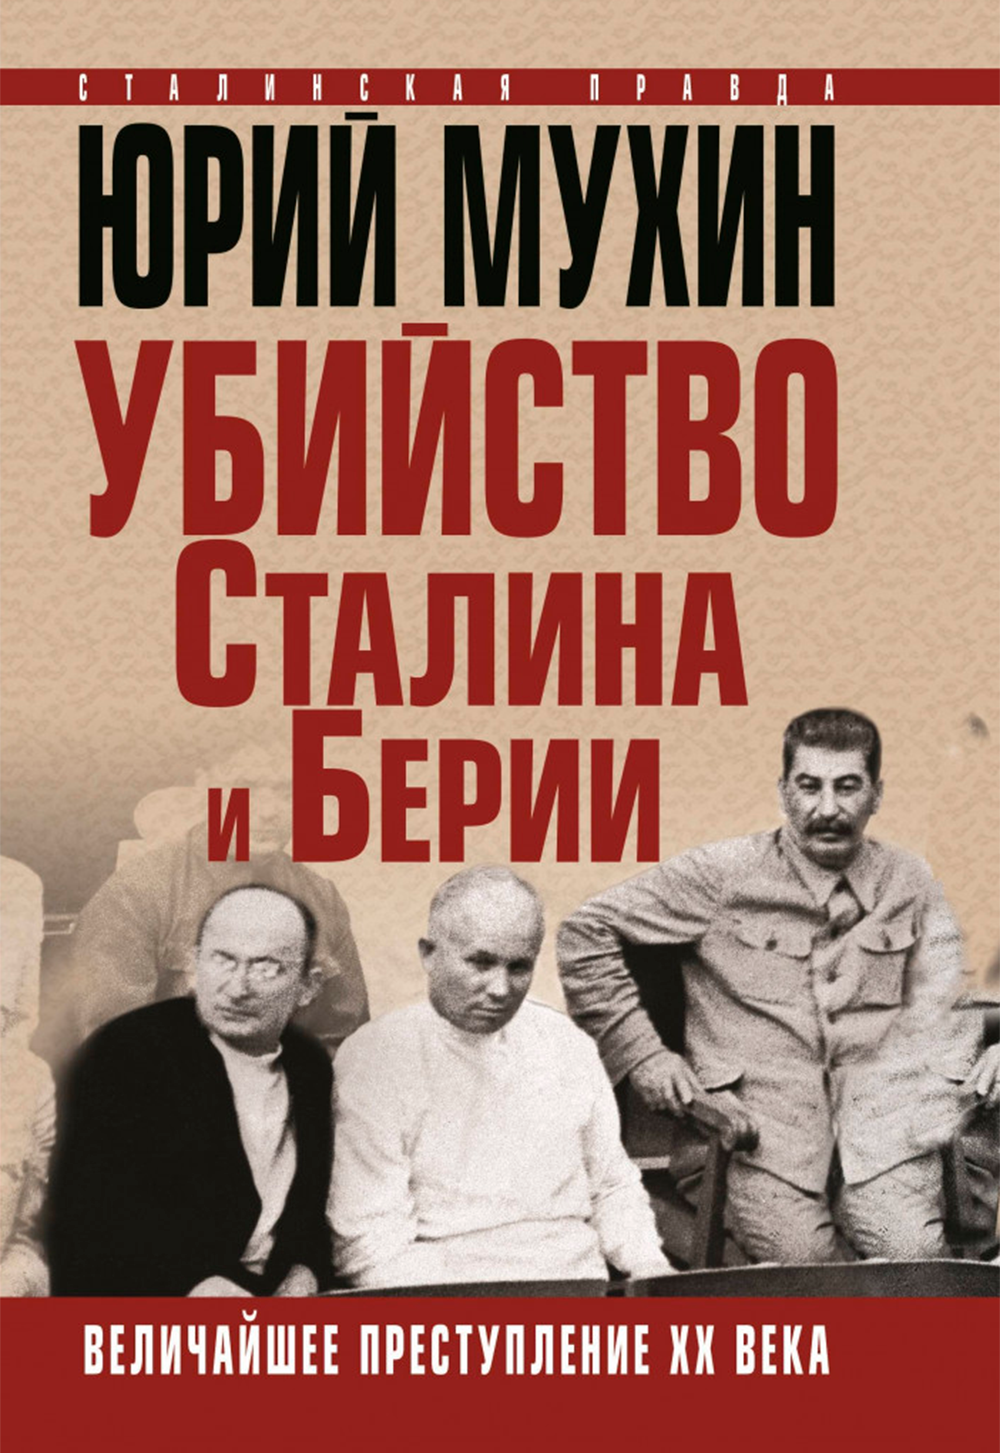 читать Юрий Мухин "Убийство Сталина и Берия"